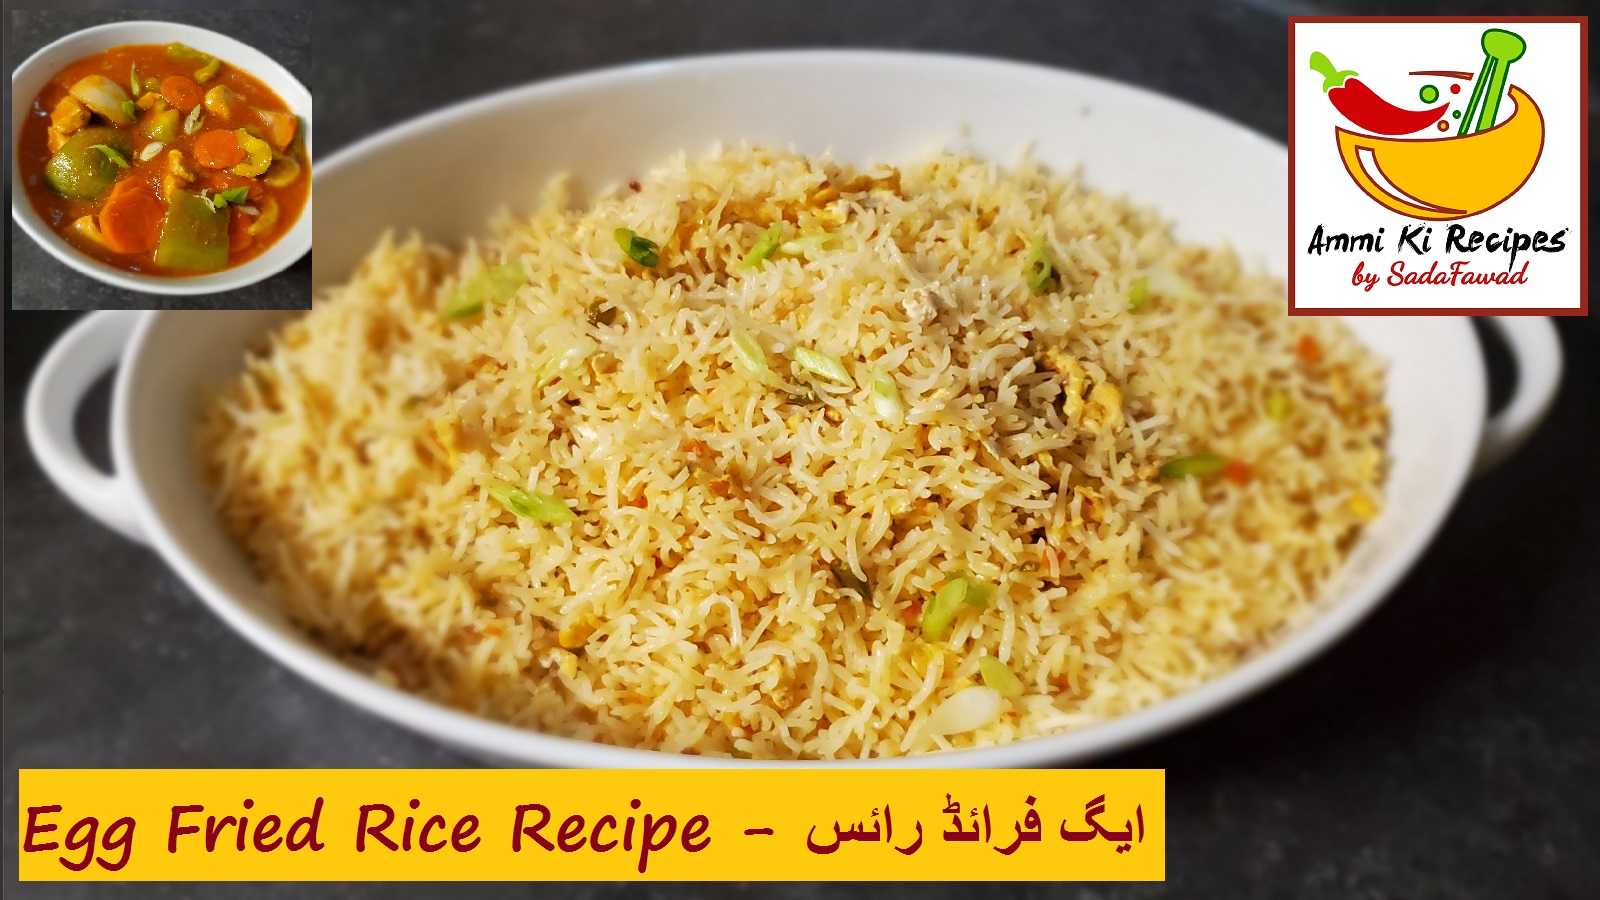 Egg Fried Rice Recipe – ایگ فرائڈ رائس